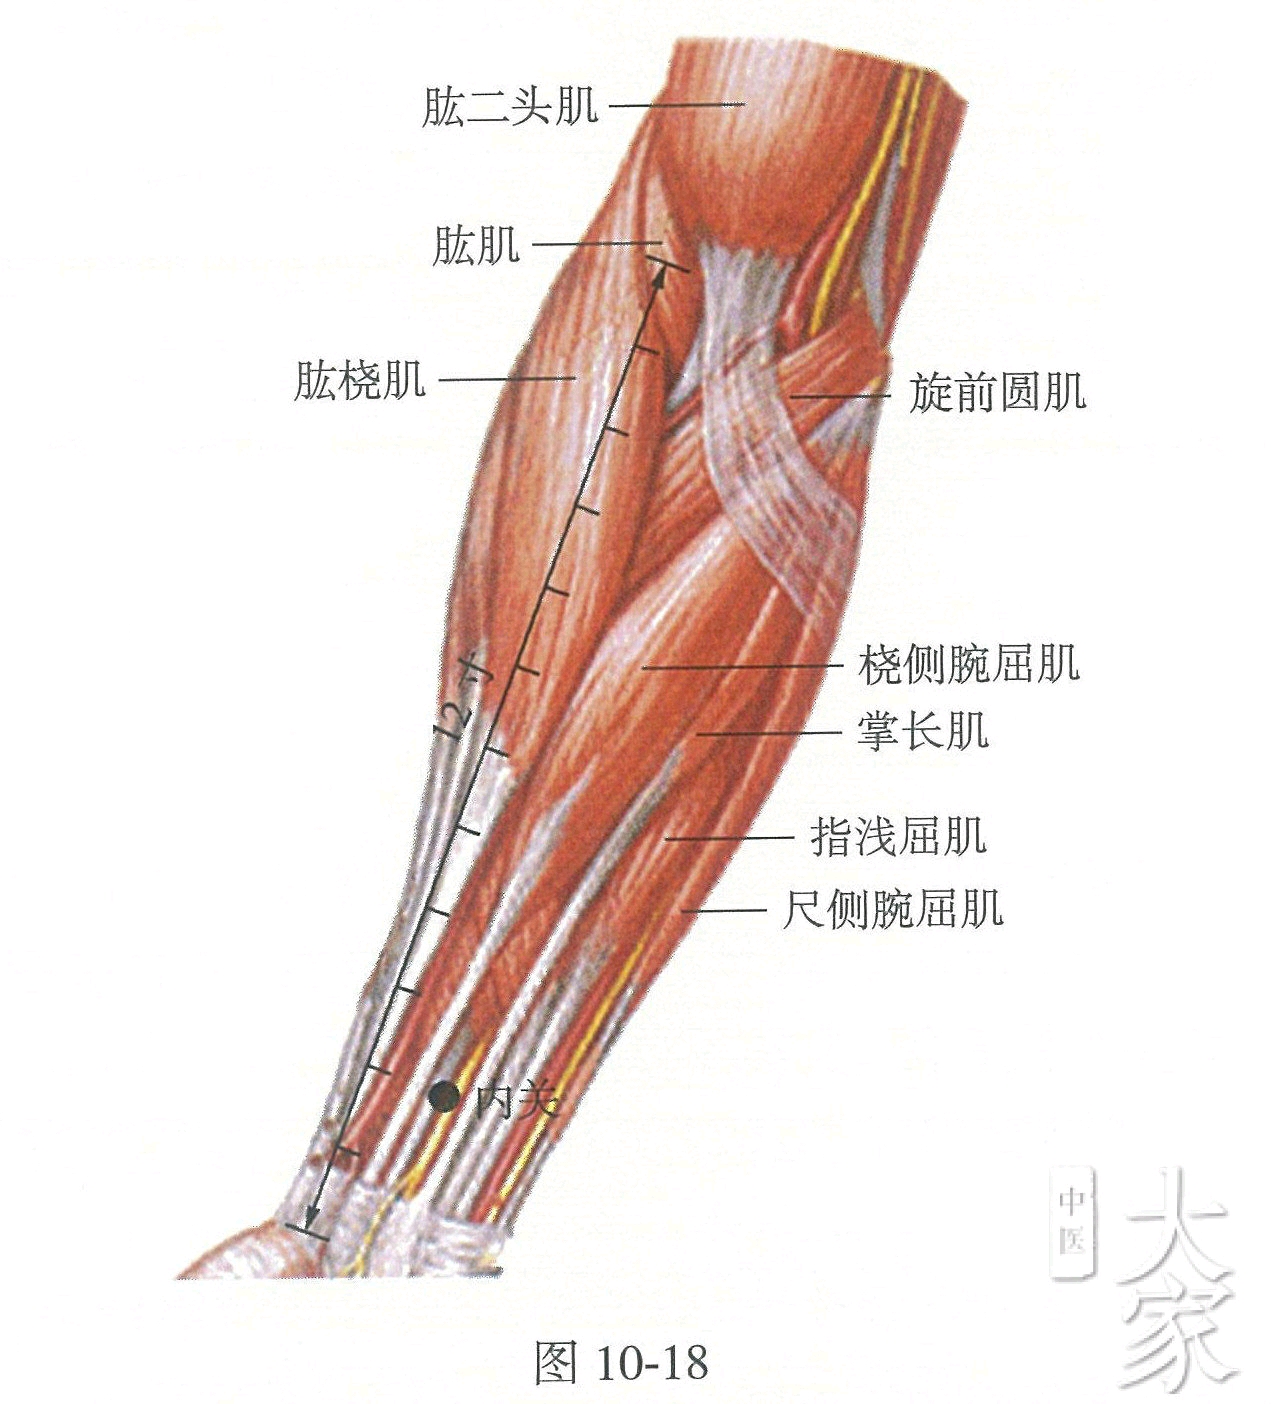 心包经——内关 内关:在前臂前区,腕掌侧远端横纹